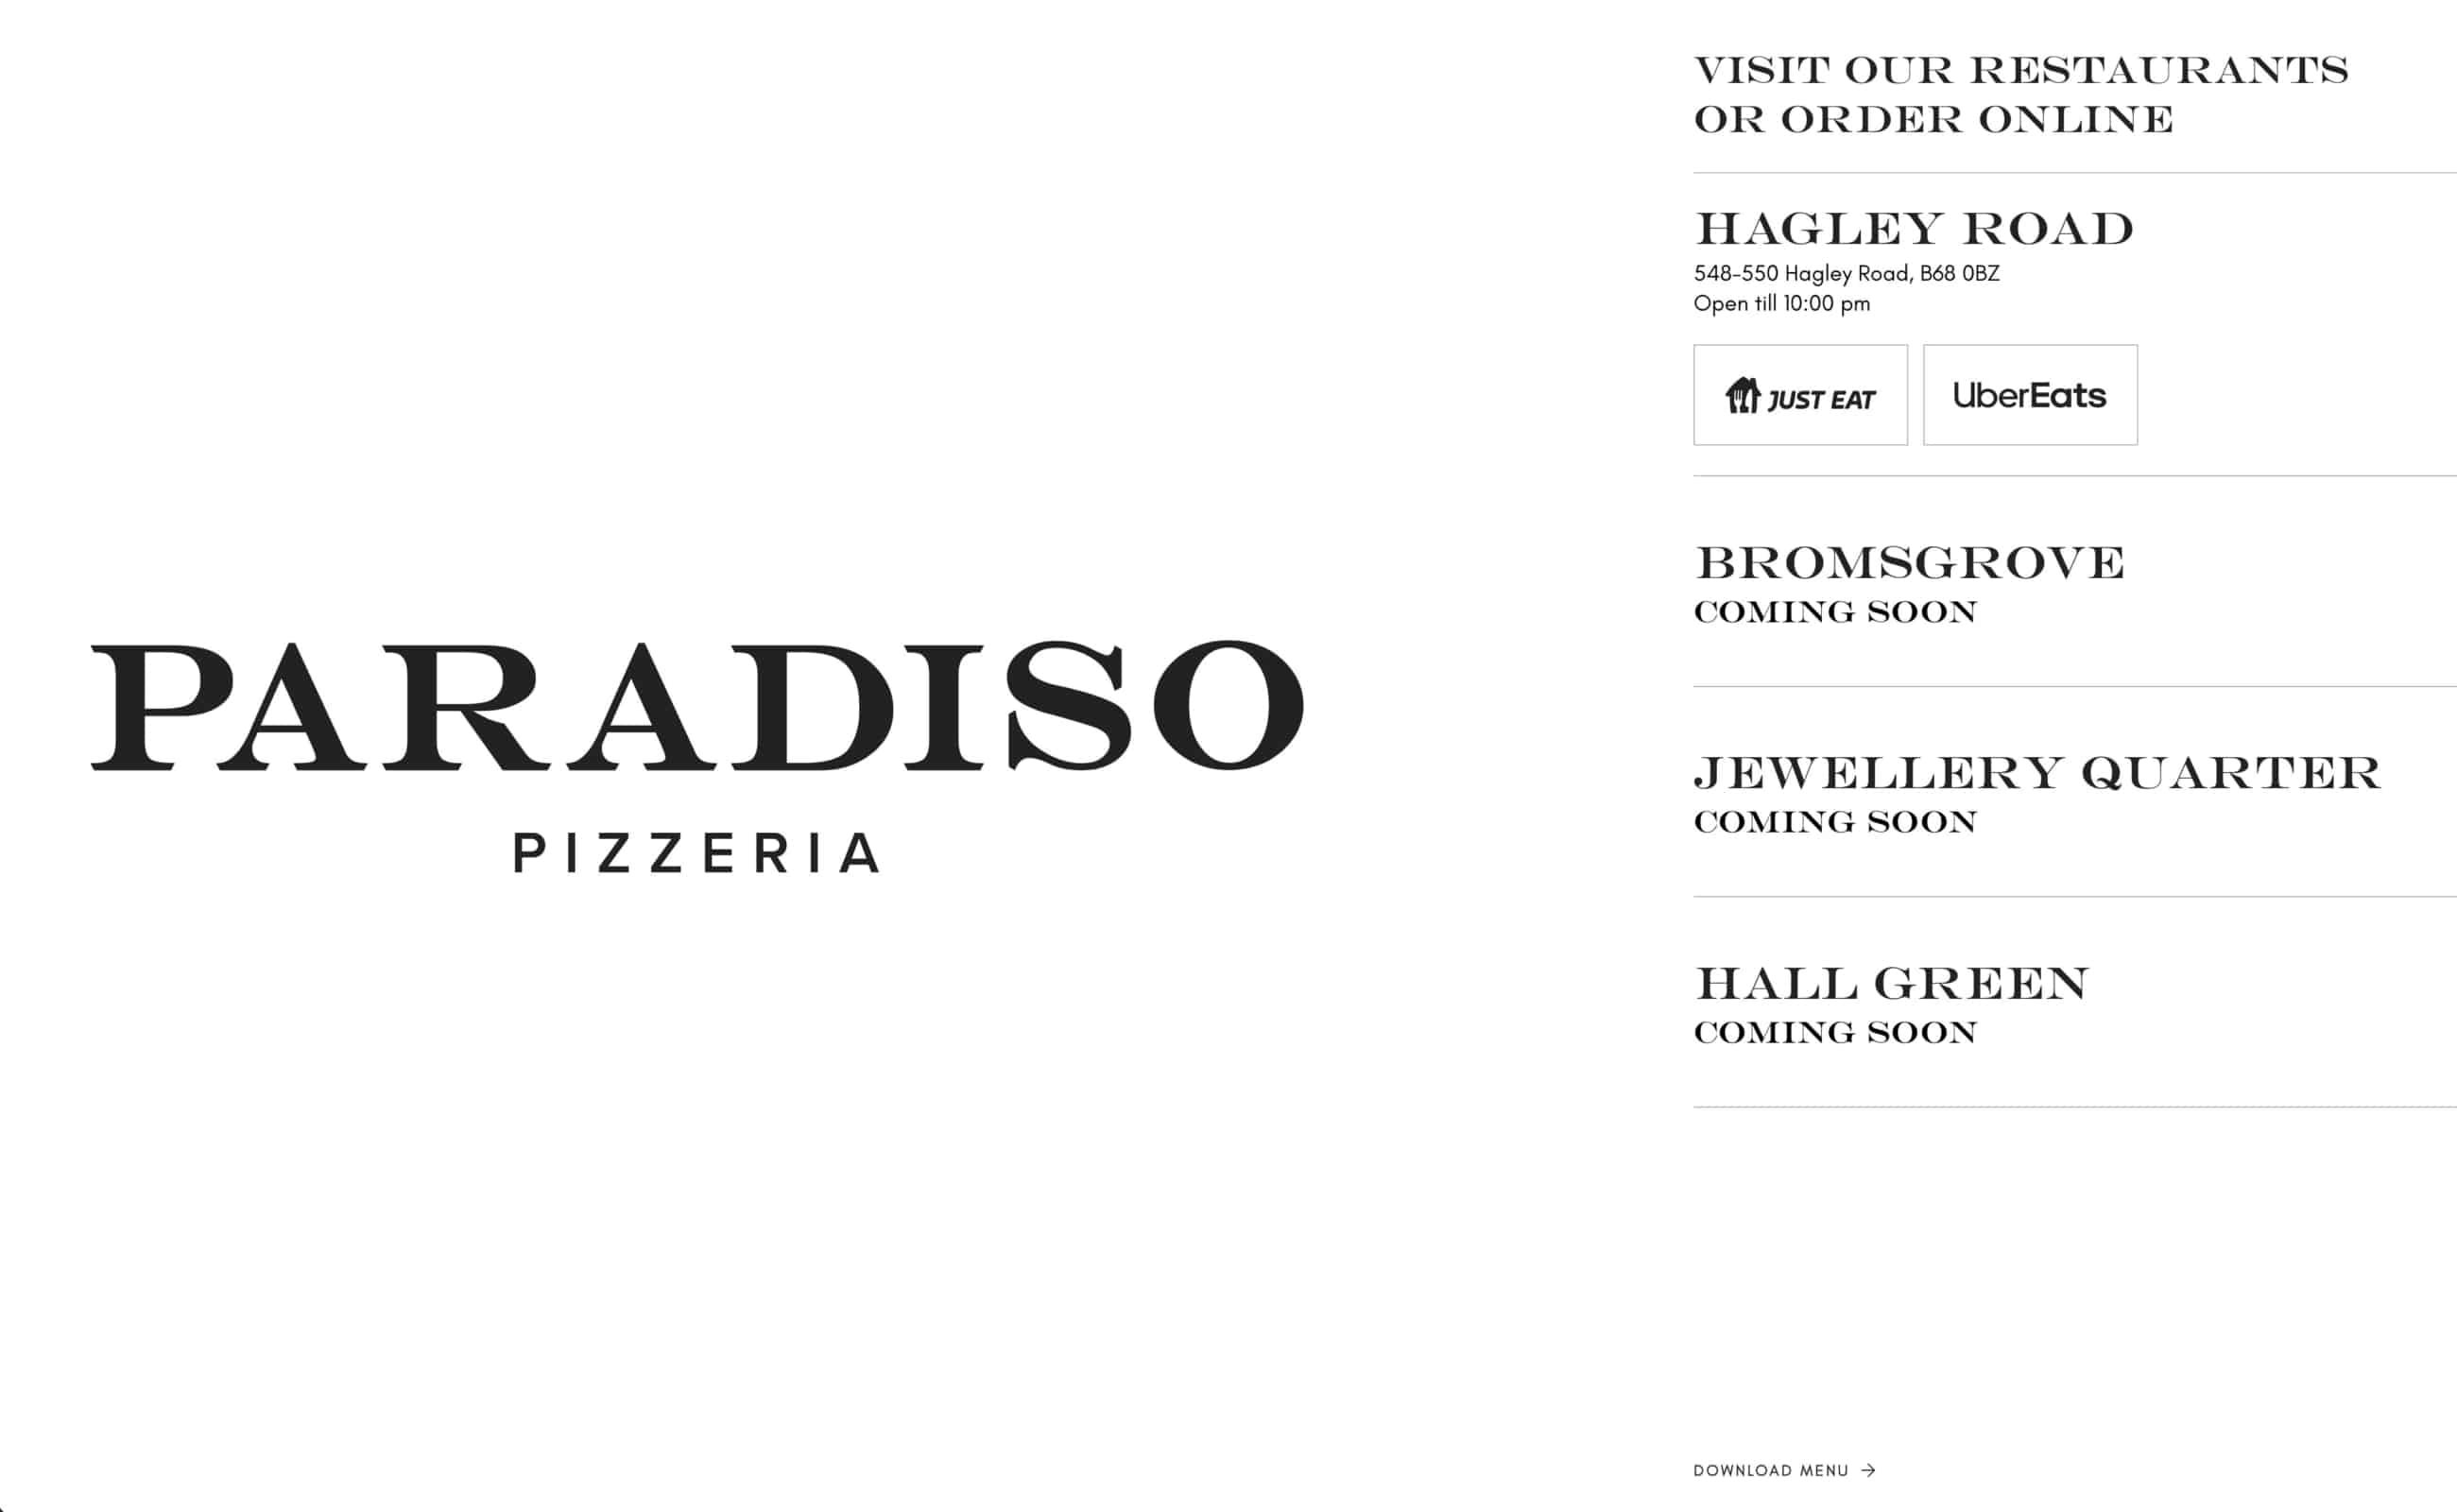 pizzeria paradiso website design